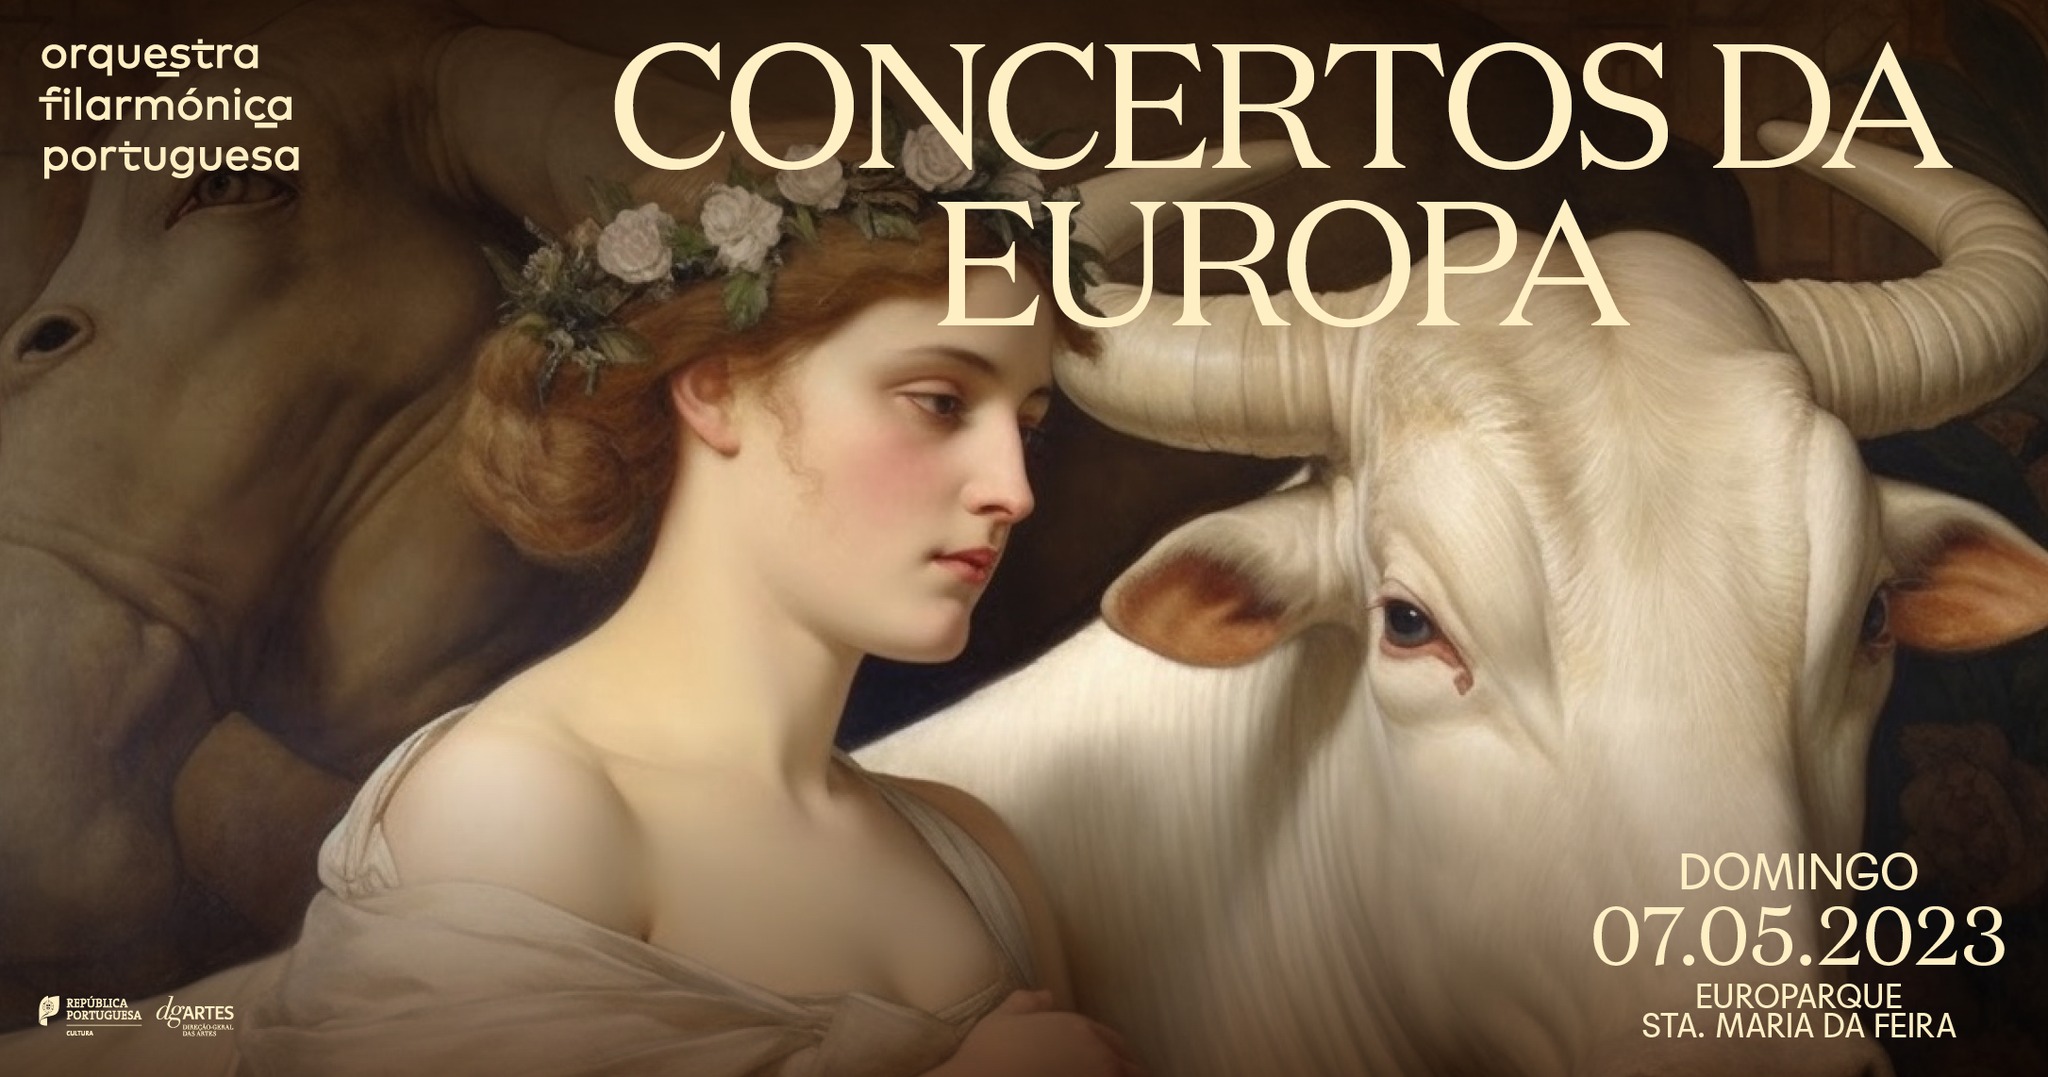 Concerto da Europa @Europarque